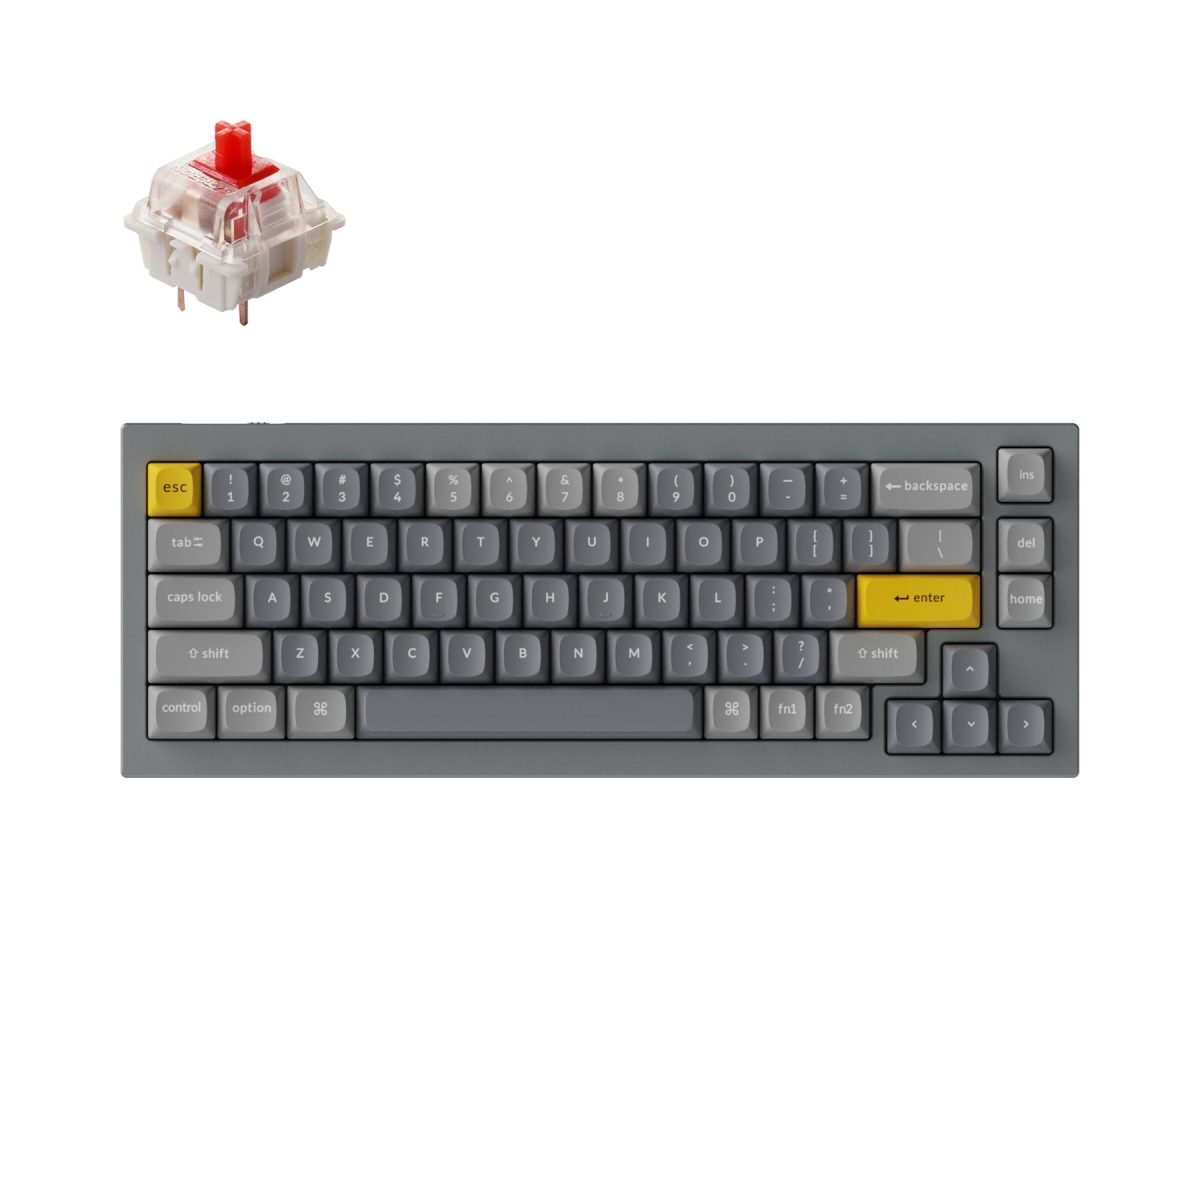 Keychron Q2 custom mechanical keyboard fully assembled version grey